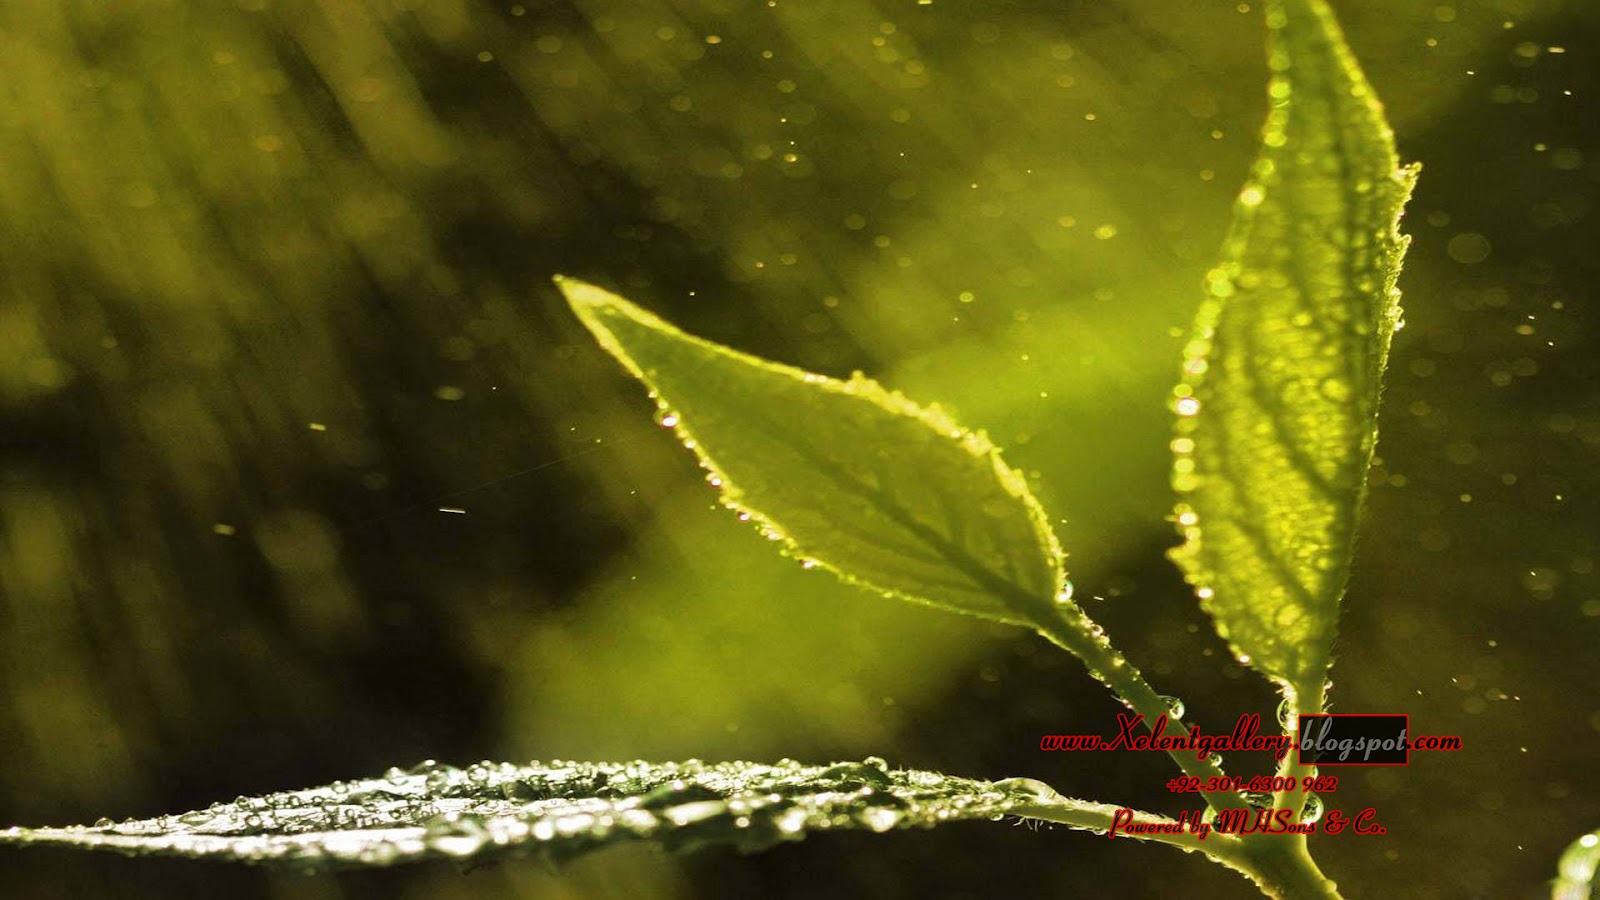 stagione delle piogge hd wallpaper,acqua,natura,verde,foglia,macrofotografia